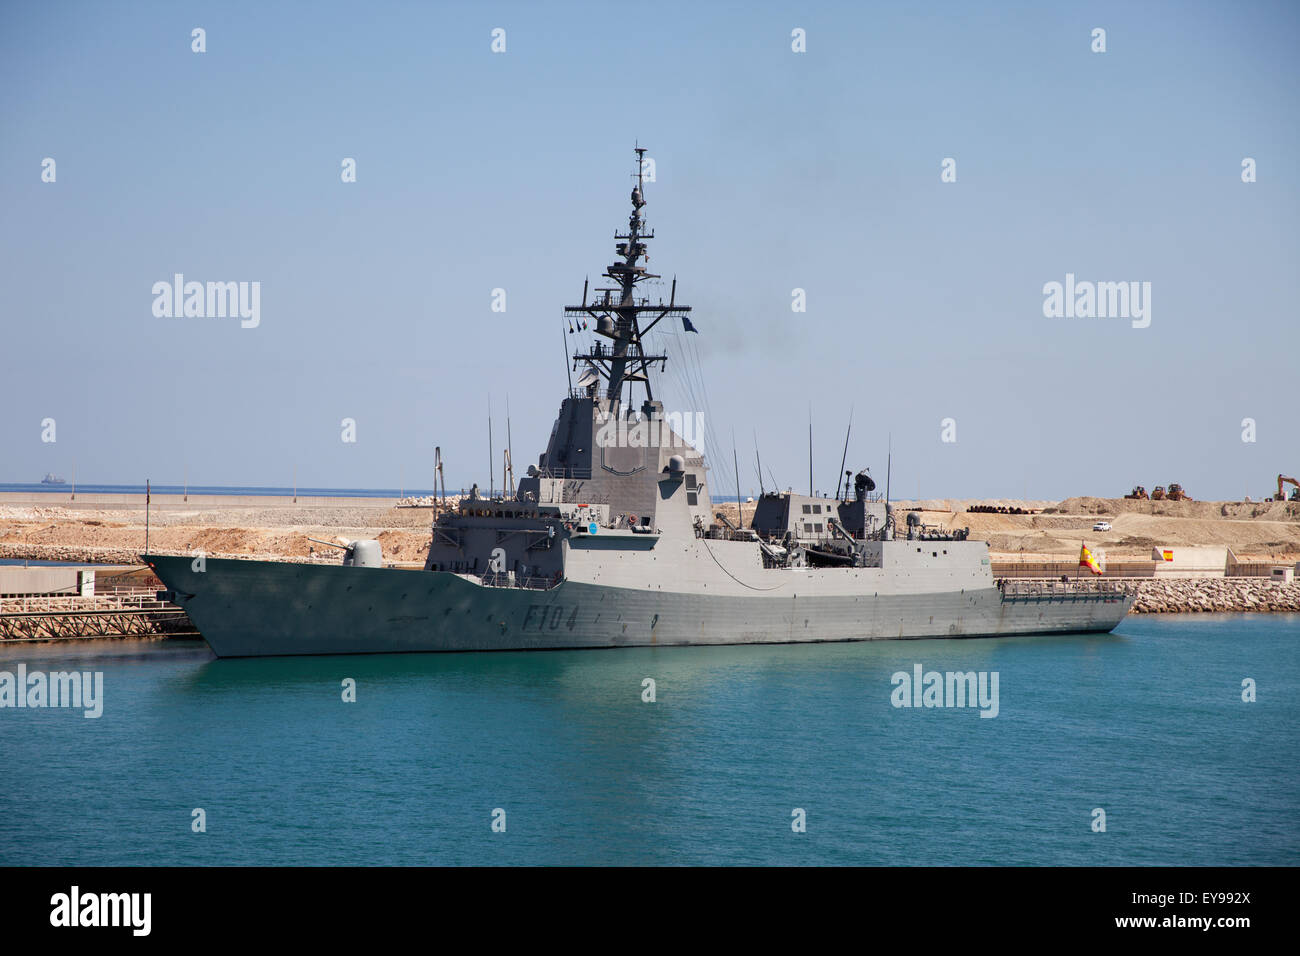 Navire de la marine espagnole sur l'obligation de lutte contre le piratage, Salalah, Oman, Port, Dhofar Oman Banque D'Images